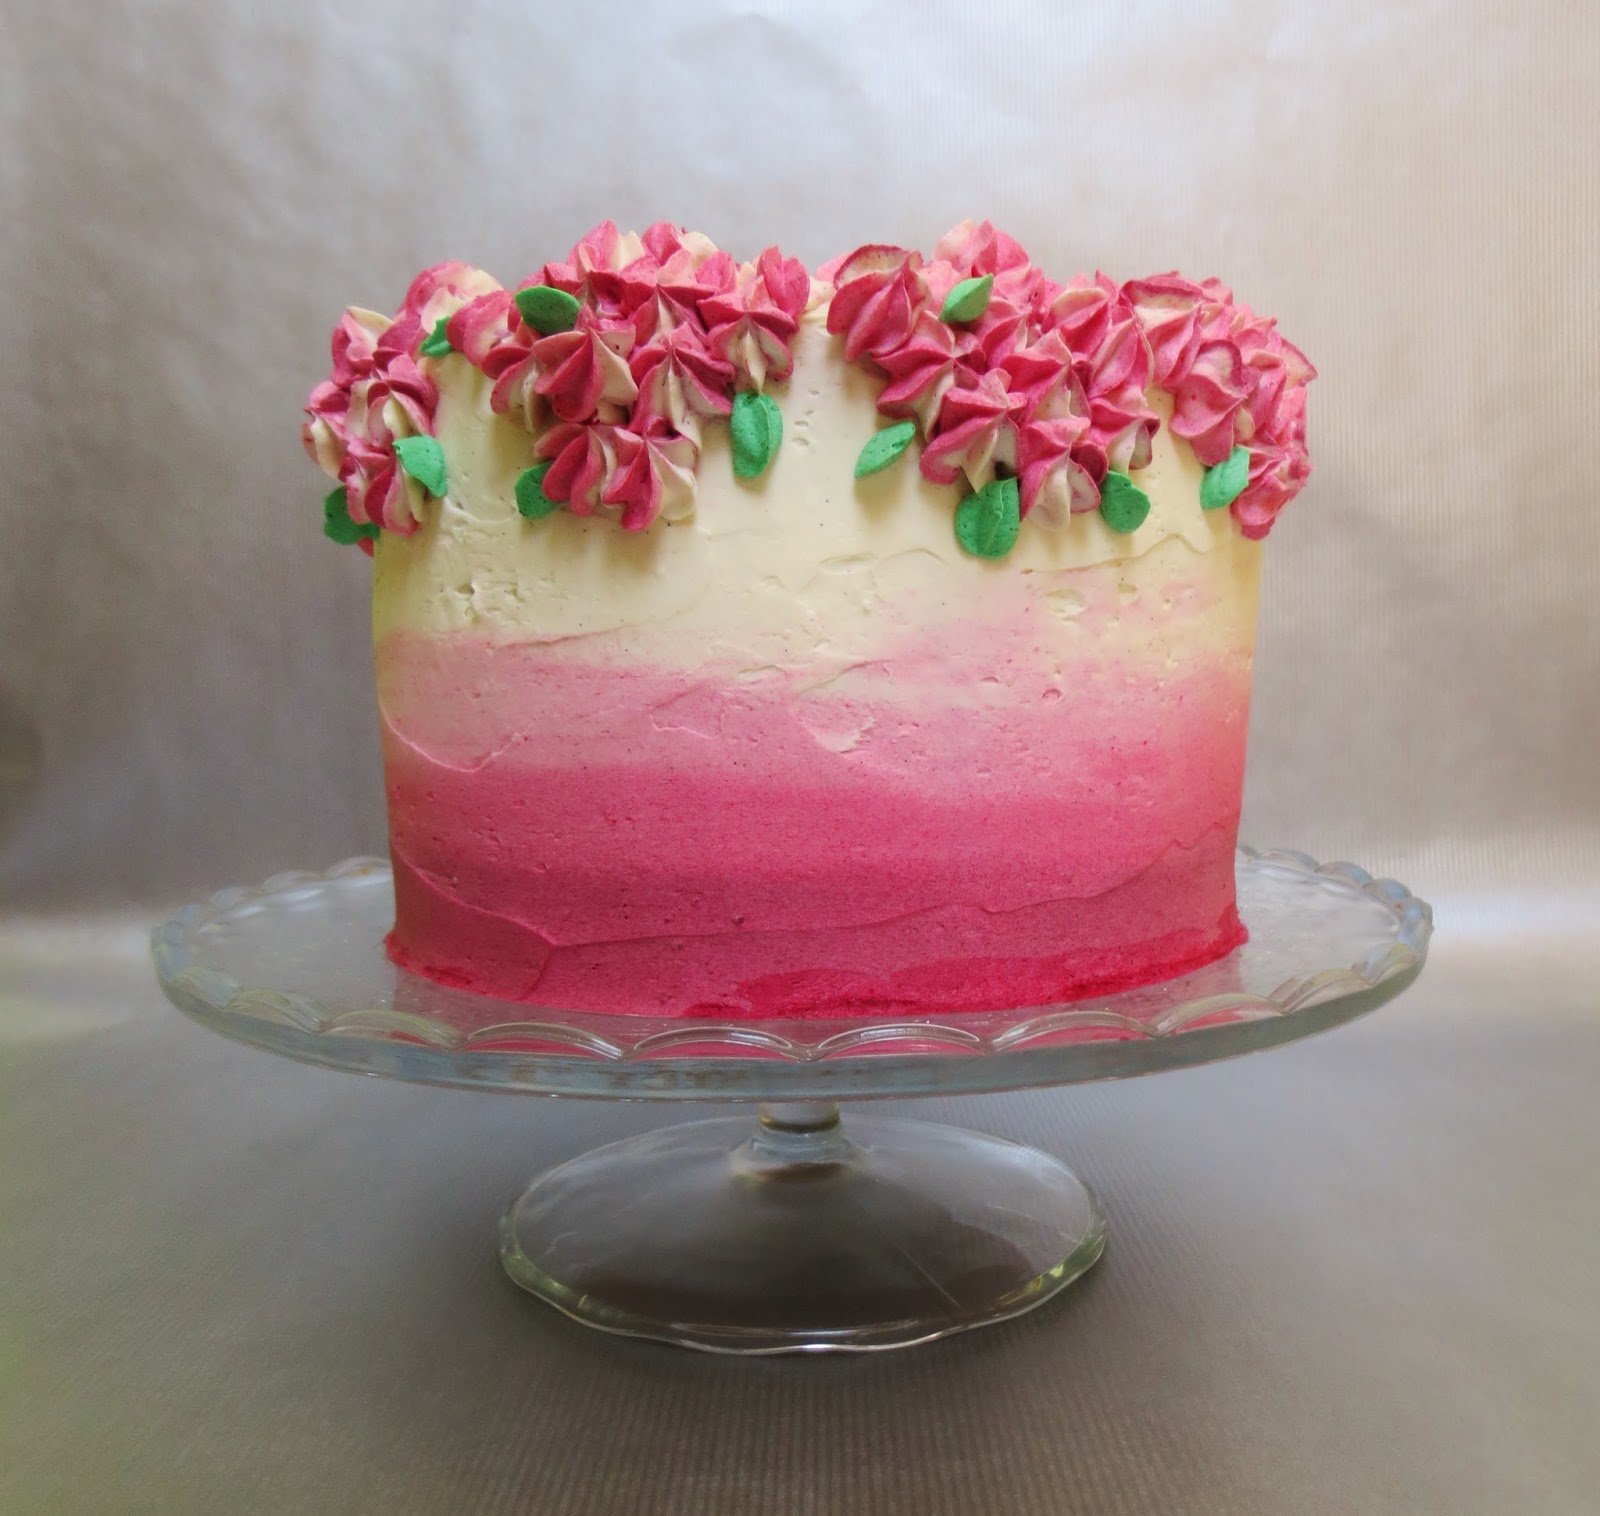 Выравнивание и украшение торта кремом чиз. Украшение торта мазками из крема. Торт украшенный масками крема. Торт с розовыми мазками. Украшение торта градиент.